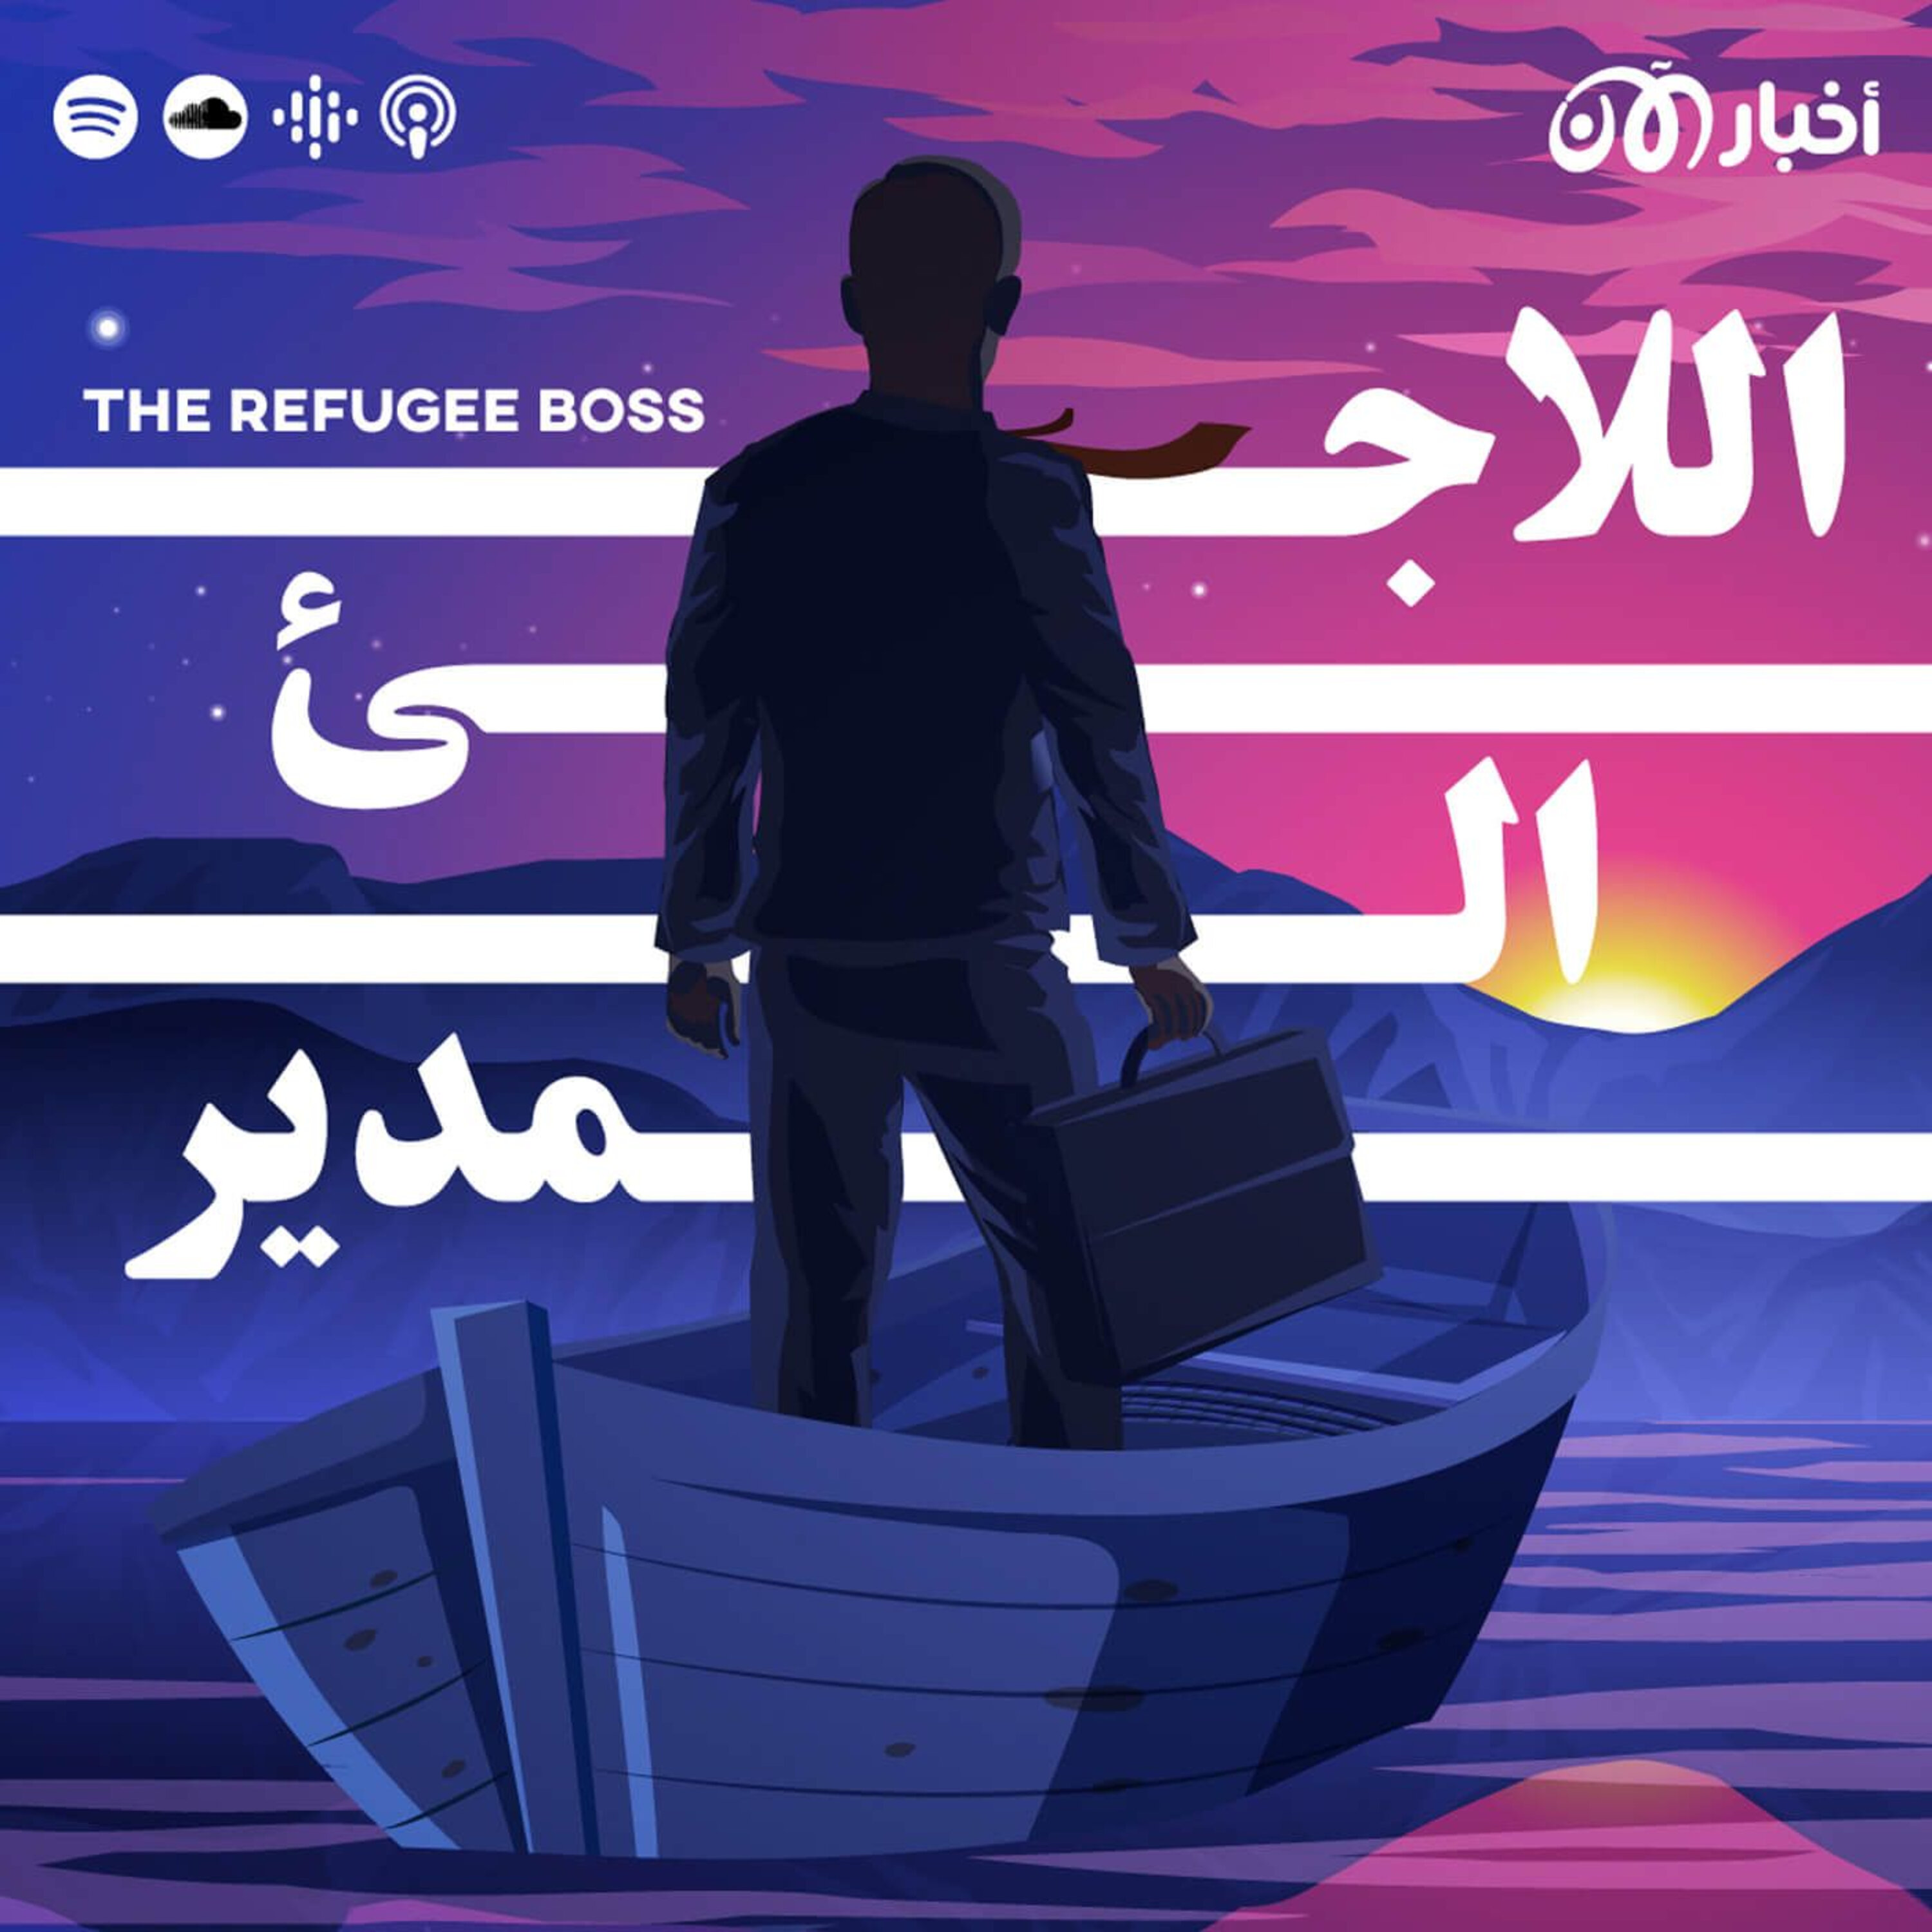 The Refugee Boss | اللاجئ المدير